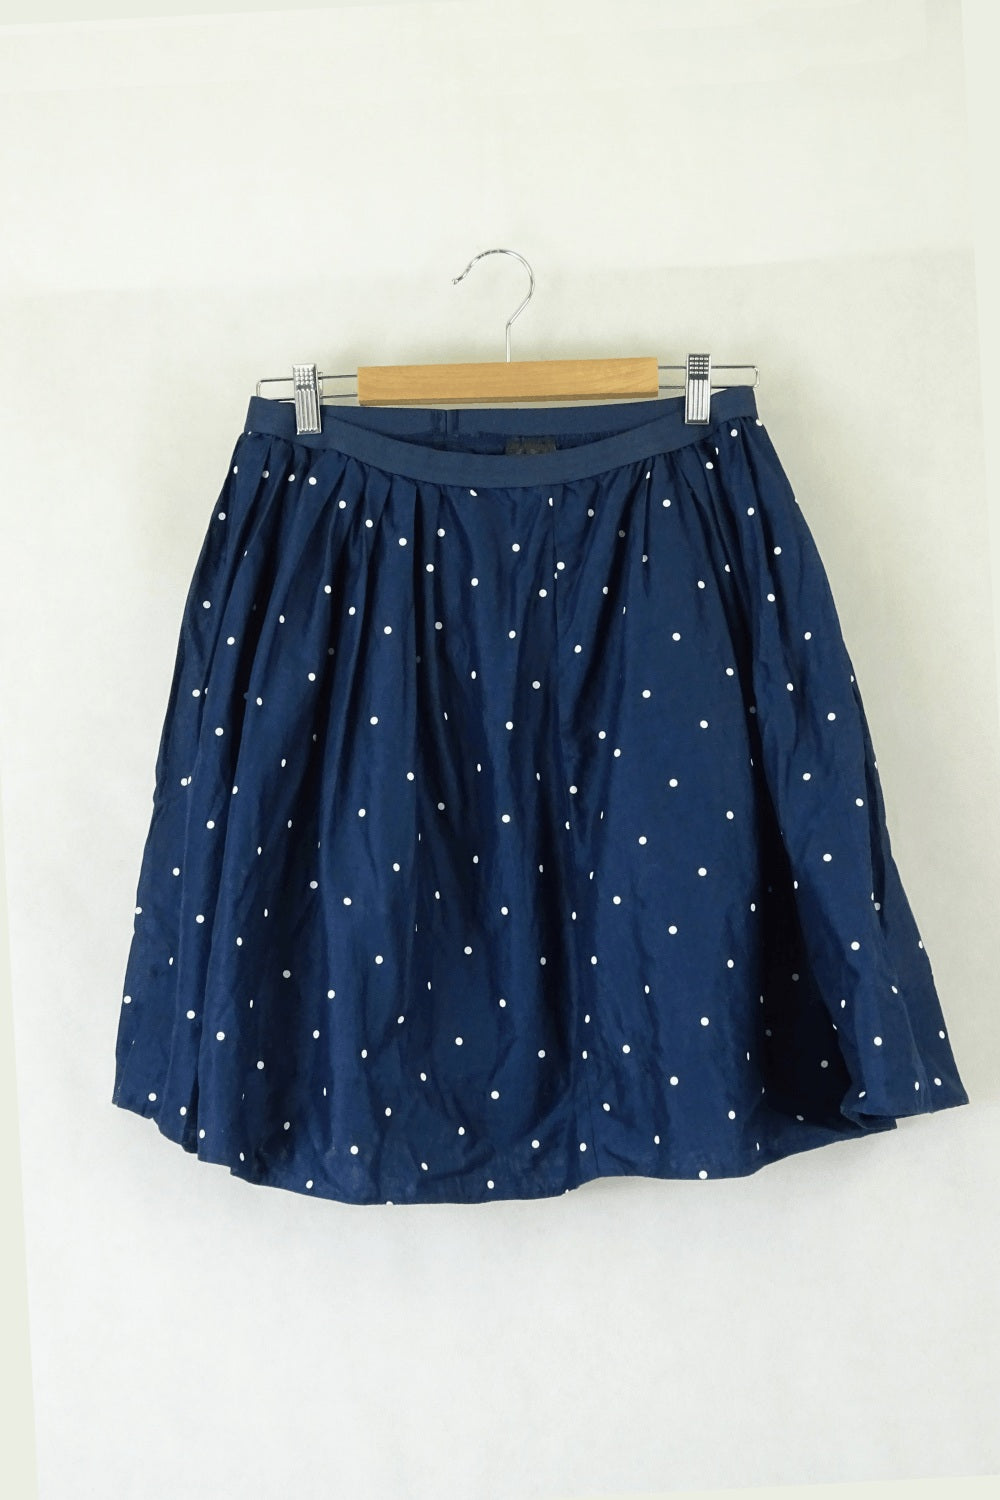 Uniqlo Blue Polka Dot Skirt M